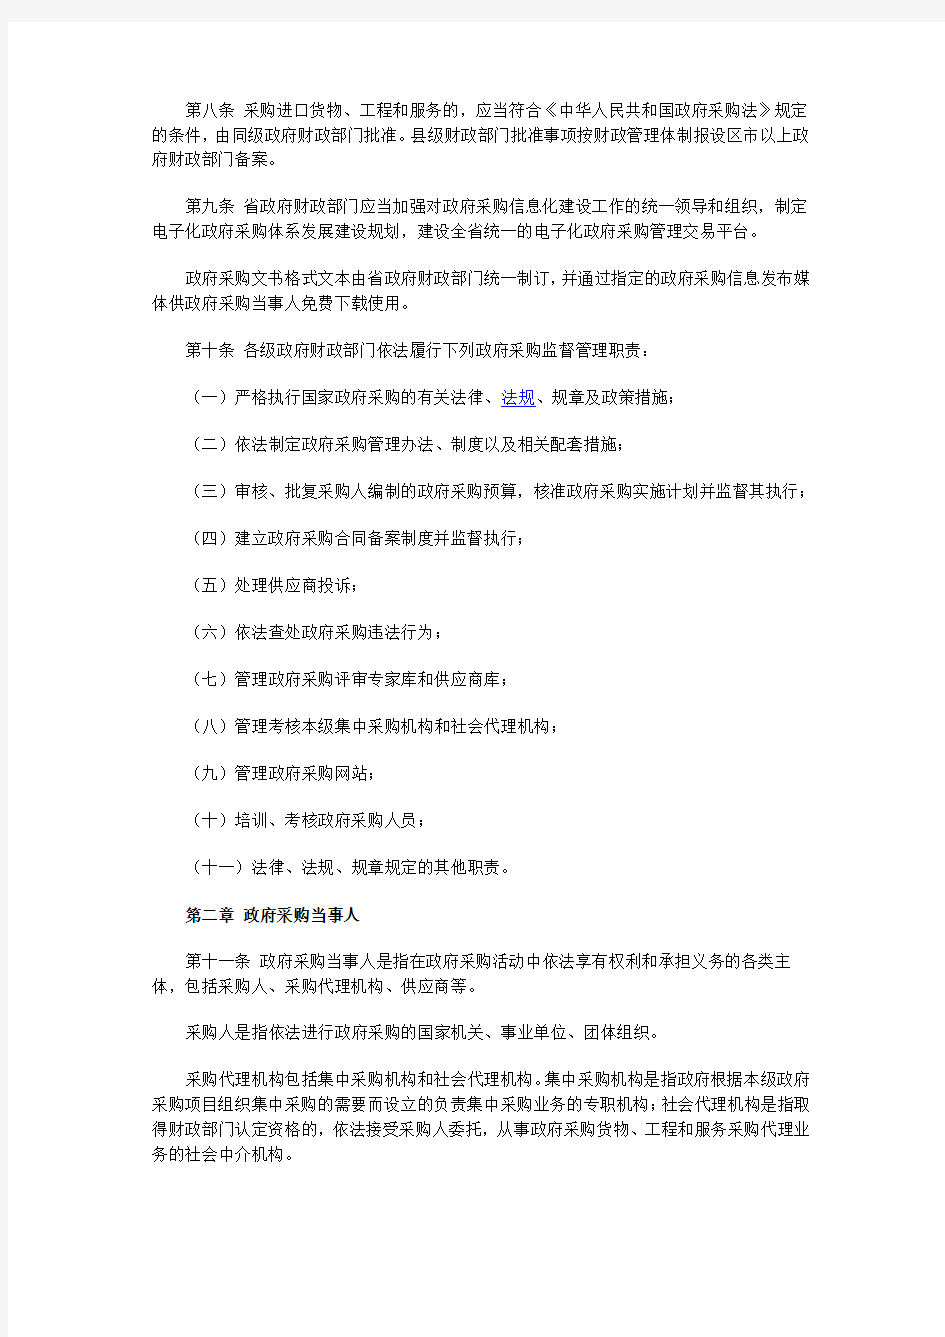 河北省人民政府办公厅关于印发河北省政府采购管理办法的通知